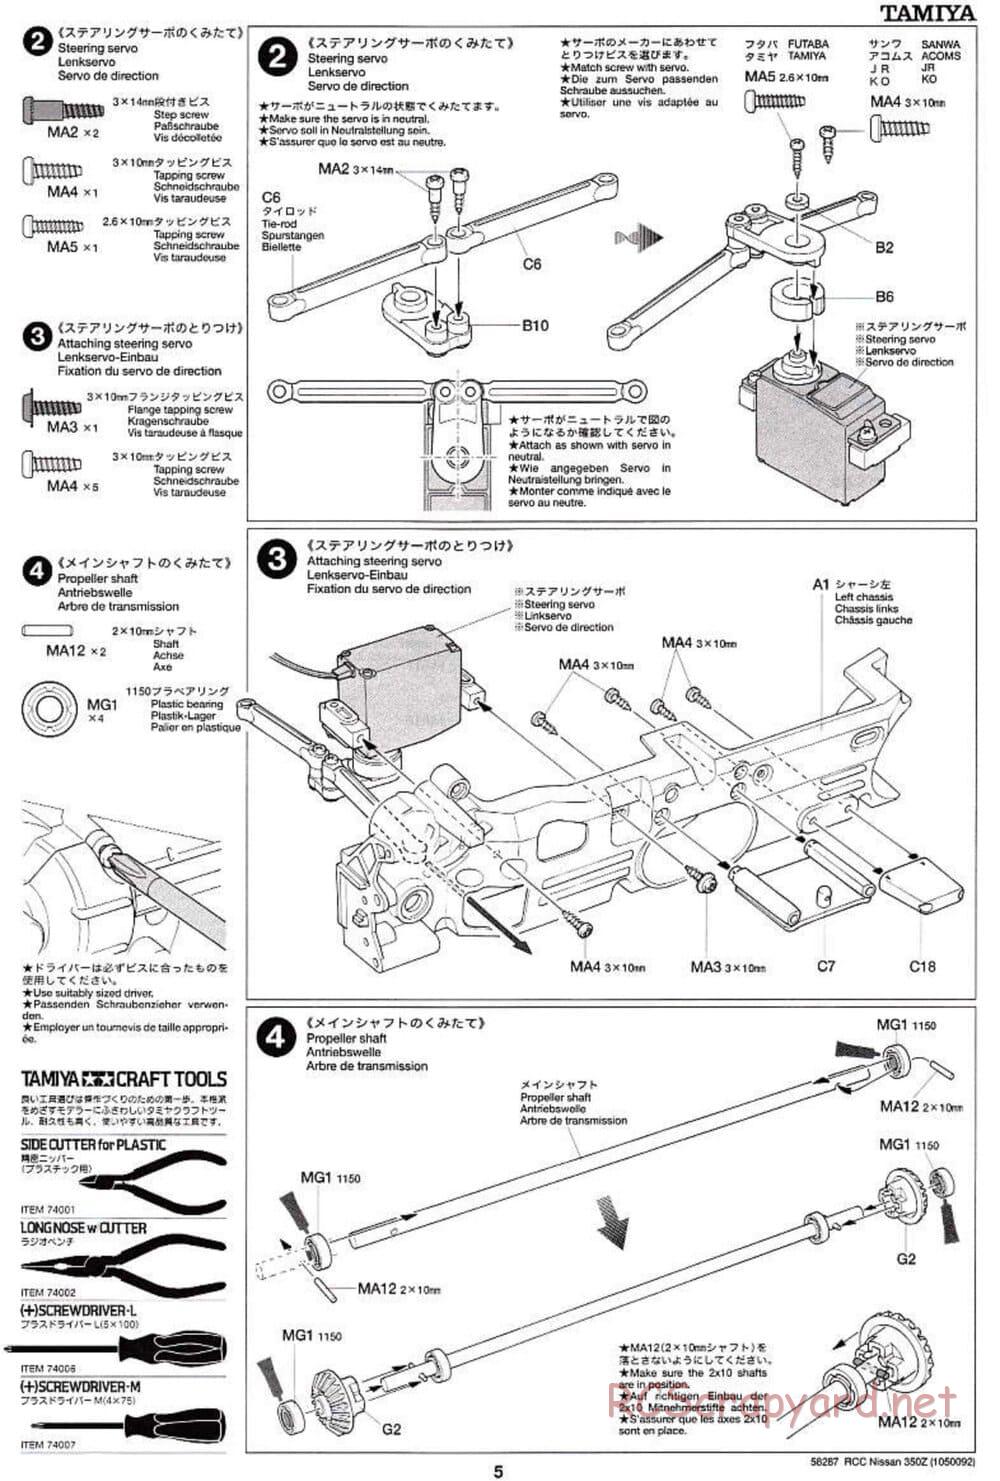 Tamiya - Nissan 350Z - TL-01 Chassis - Manual - Page 5